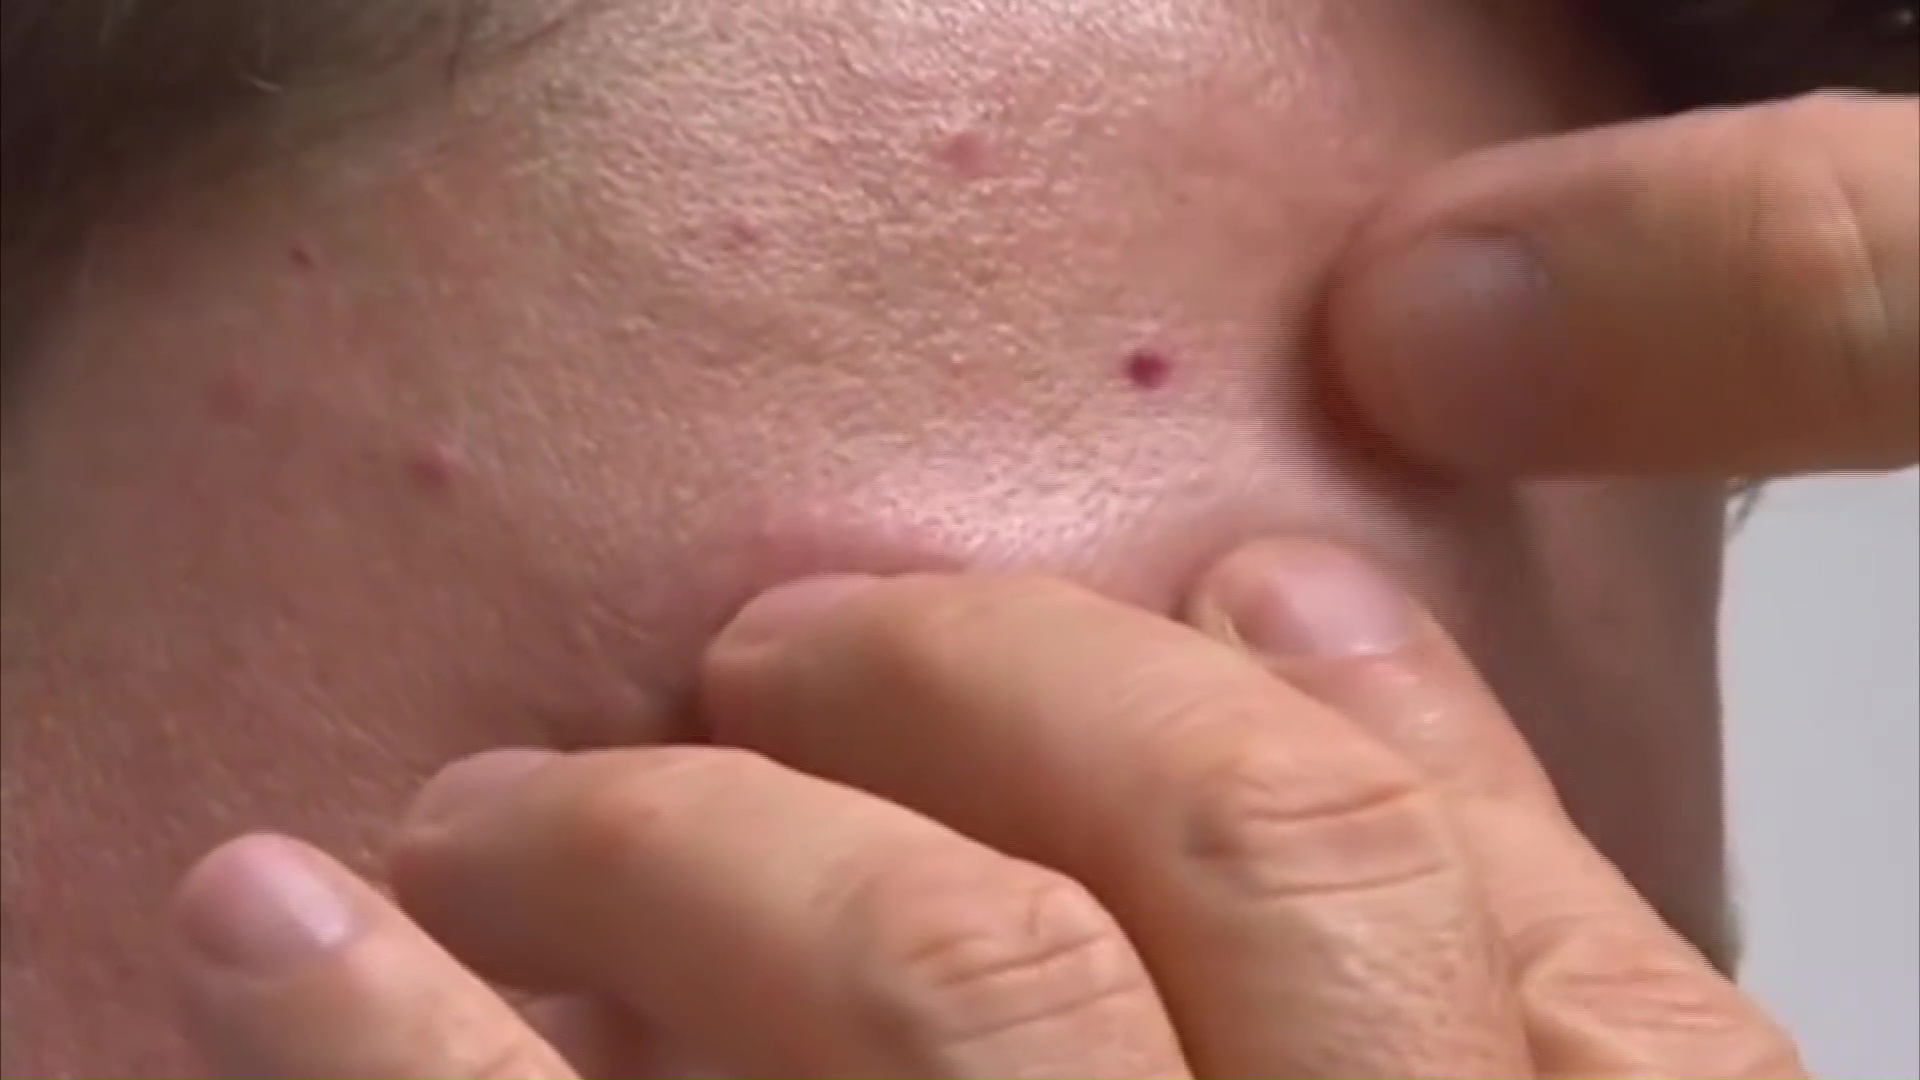 Cuidados de la piel: los casos de cáncer de piel continúan en ascenso en Misiones